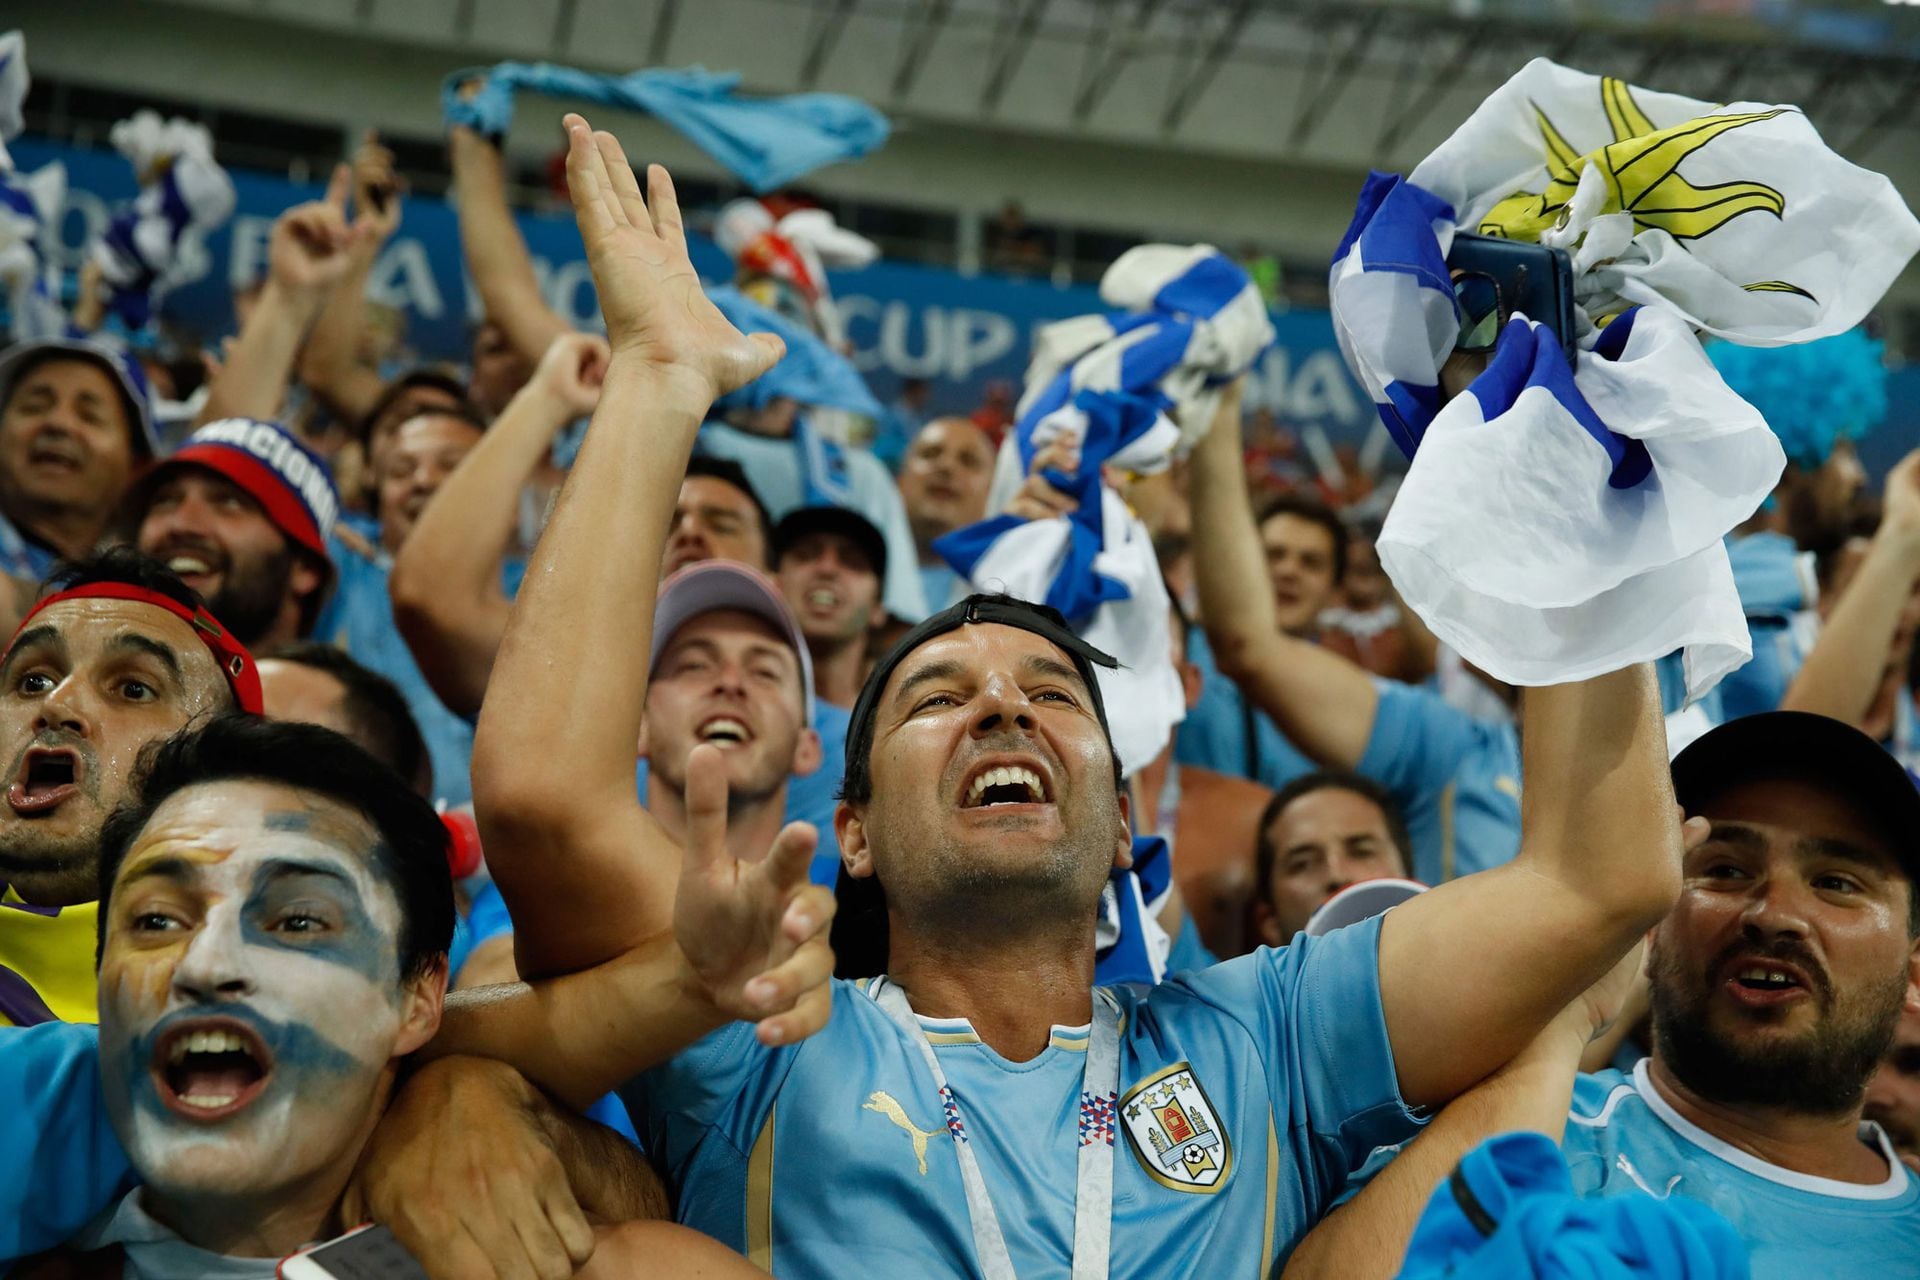 Los hinchas argentinos hinchan por Uruguay en el Mundial, un fenómeno que jamás sucedería a la inversa.